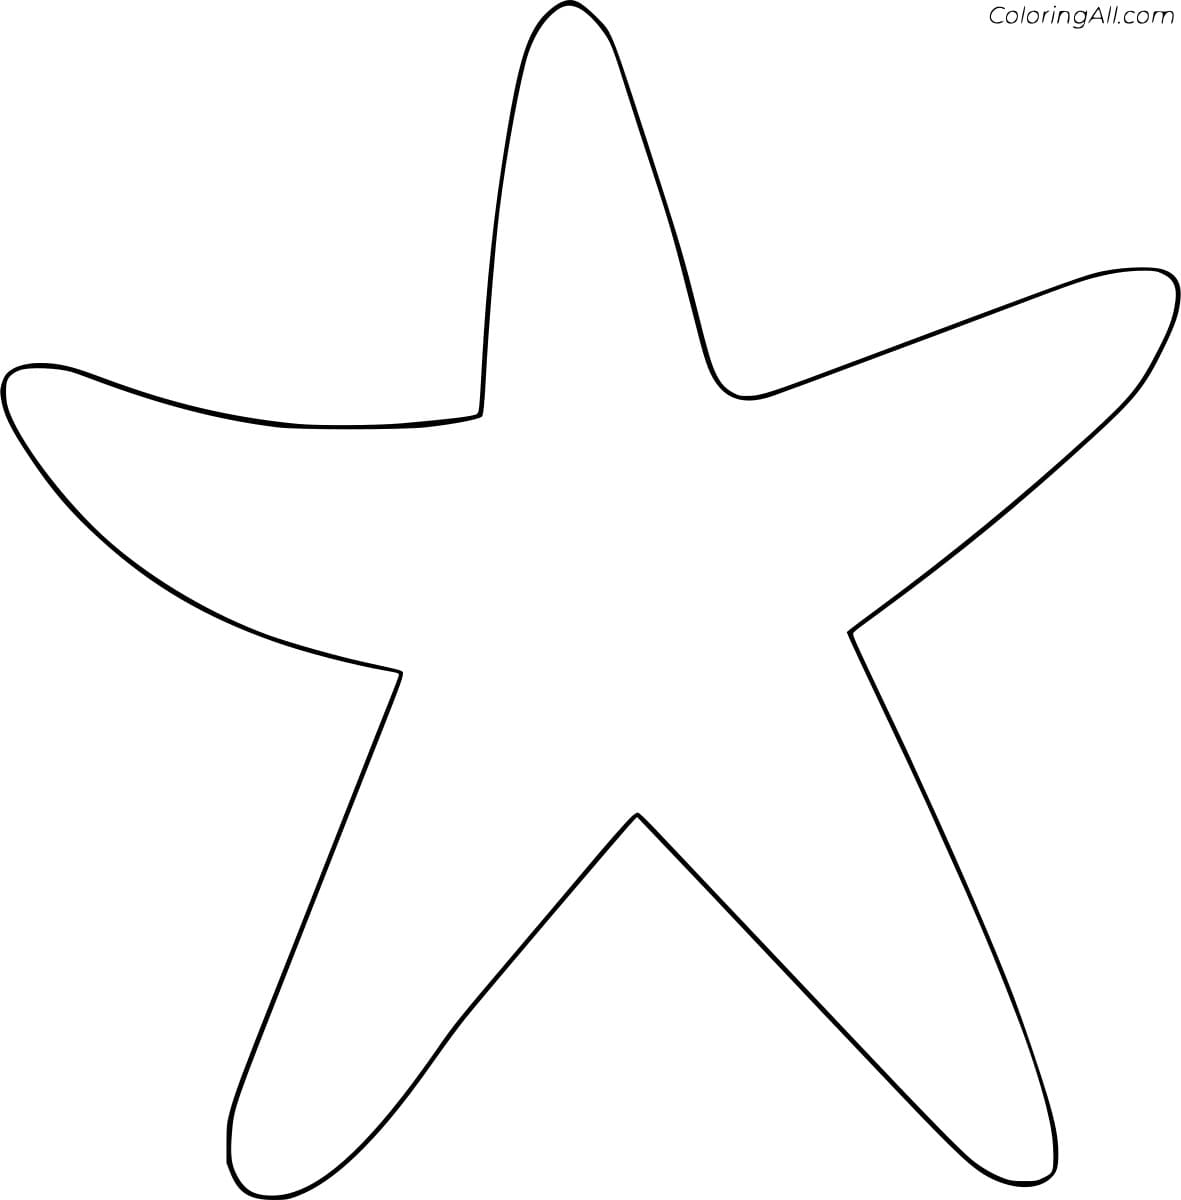 Outline Starfish Image